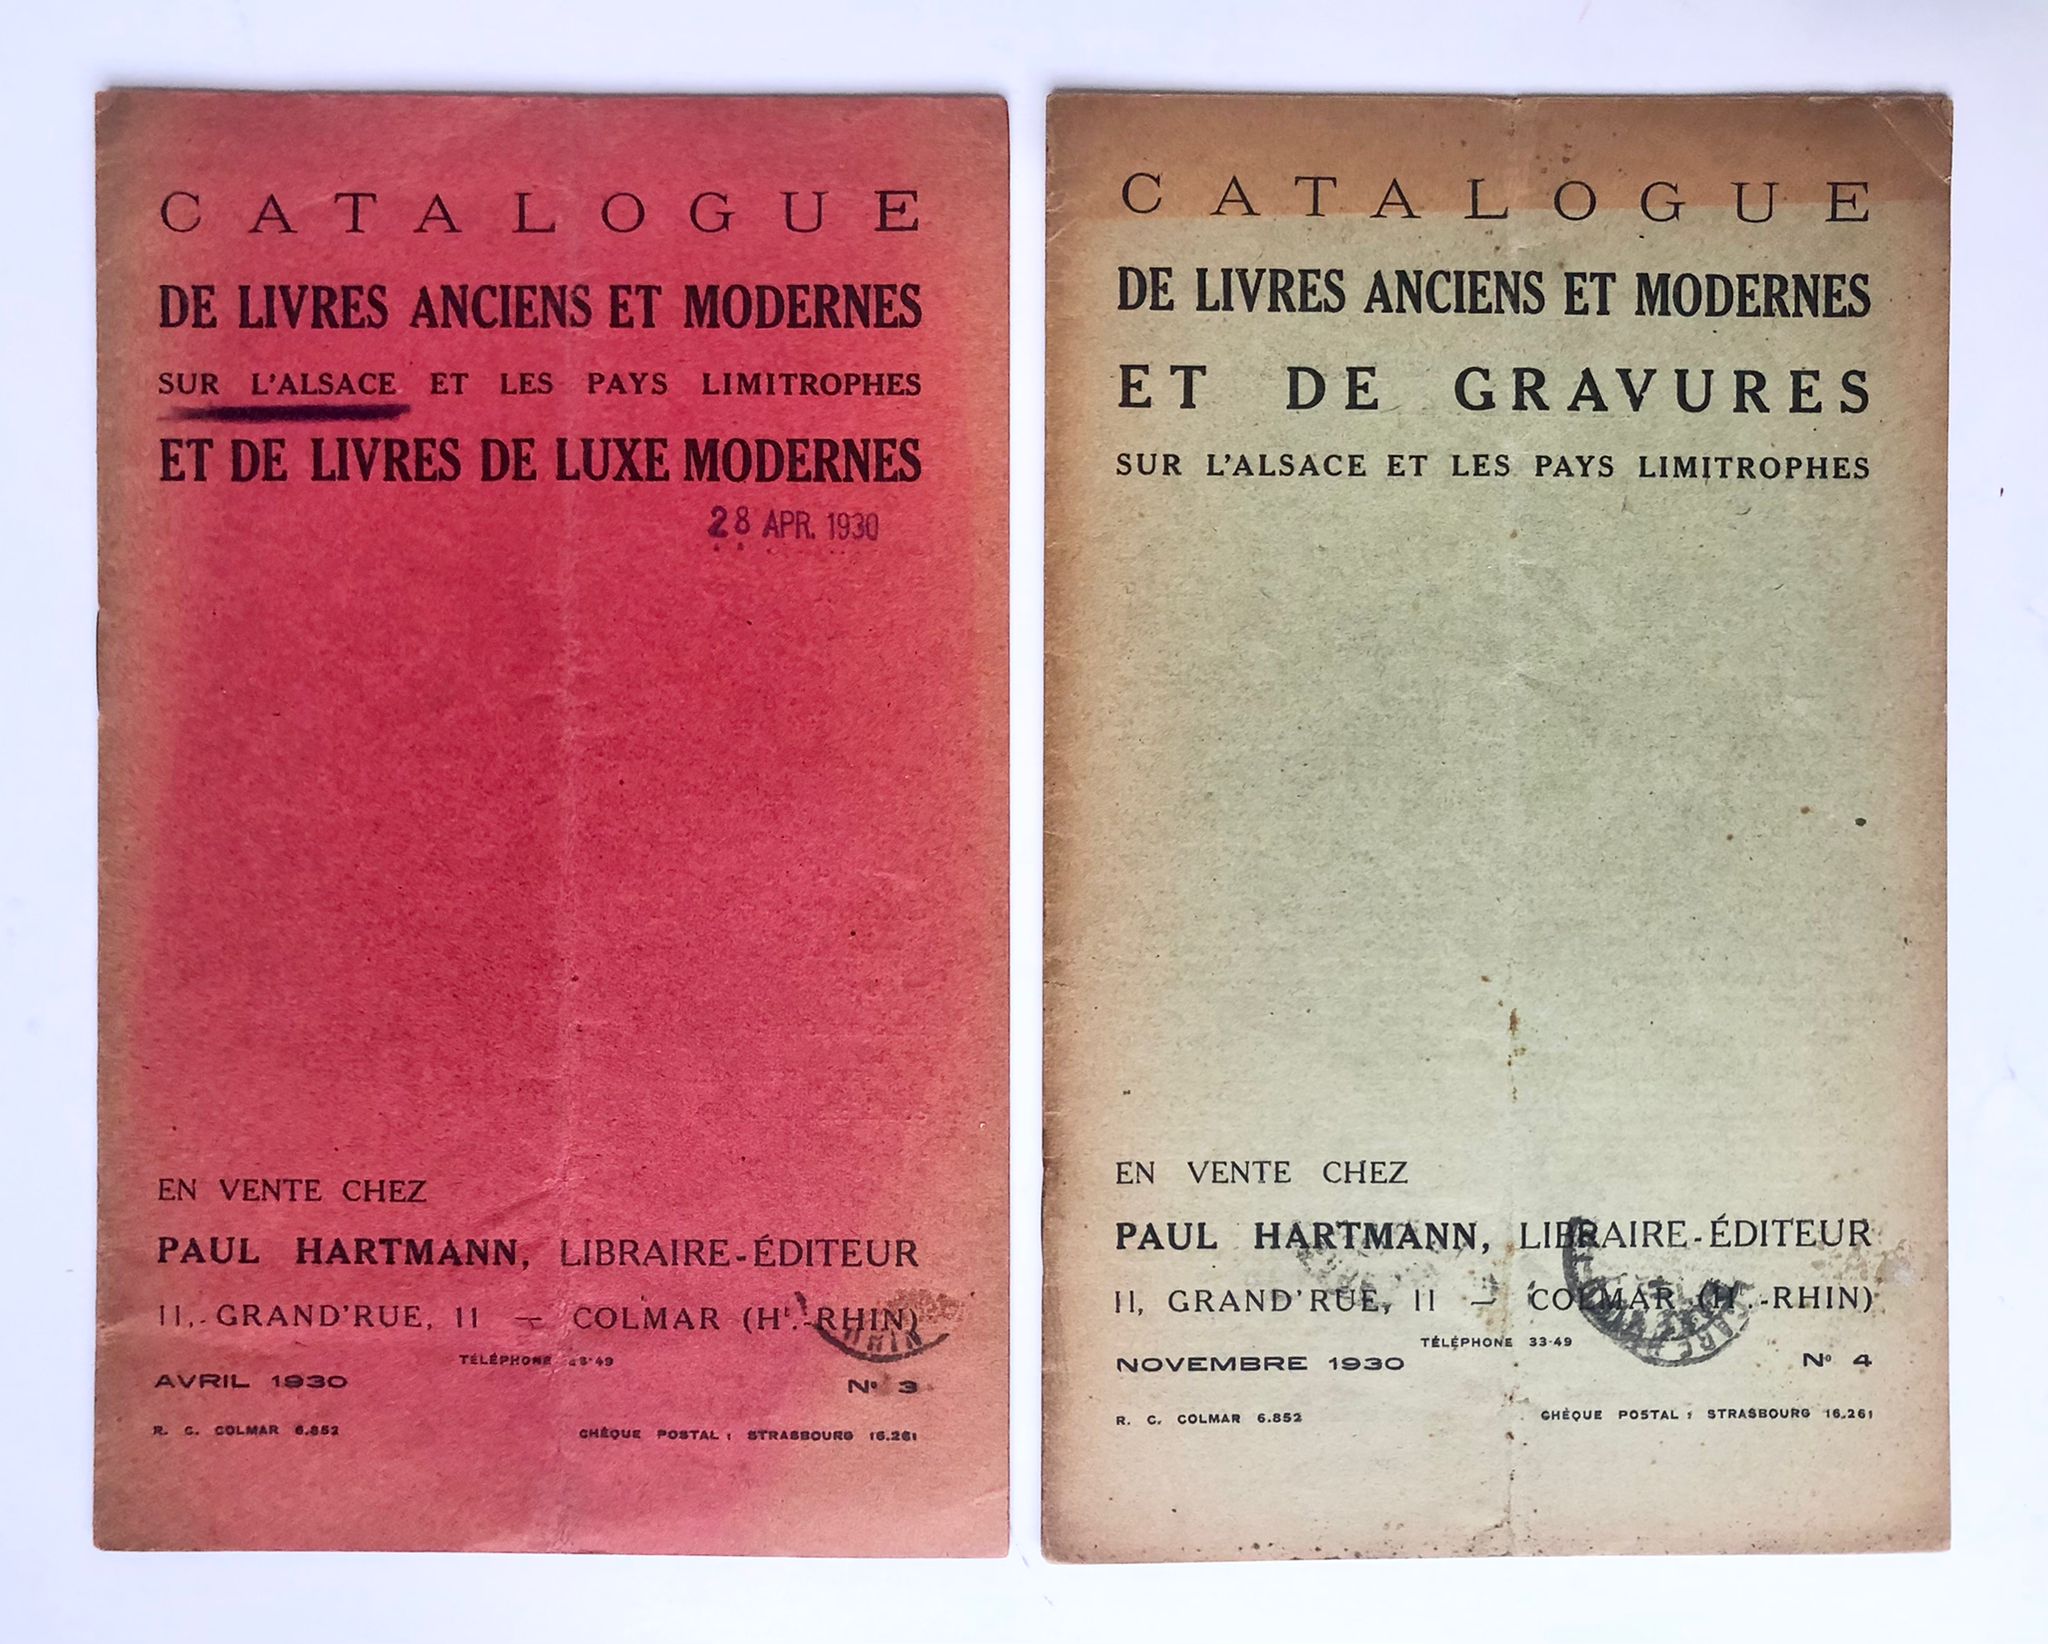 [Sale catalogue, bookshop Elzas, Elsas, 1930] Two sale catalogues: " Catalogue de livres anciens et modernes sur l'Alsace" by antique bookshop (antiquariaat) P. Harxmann, Colmar, 1930, 20 pp.